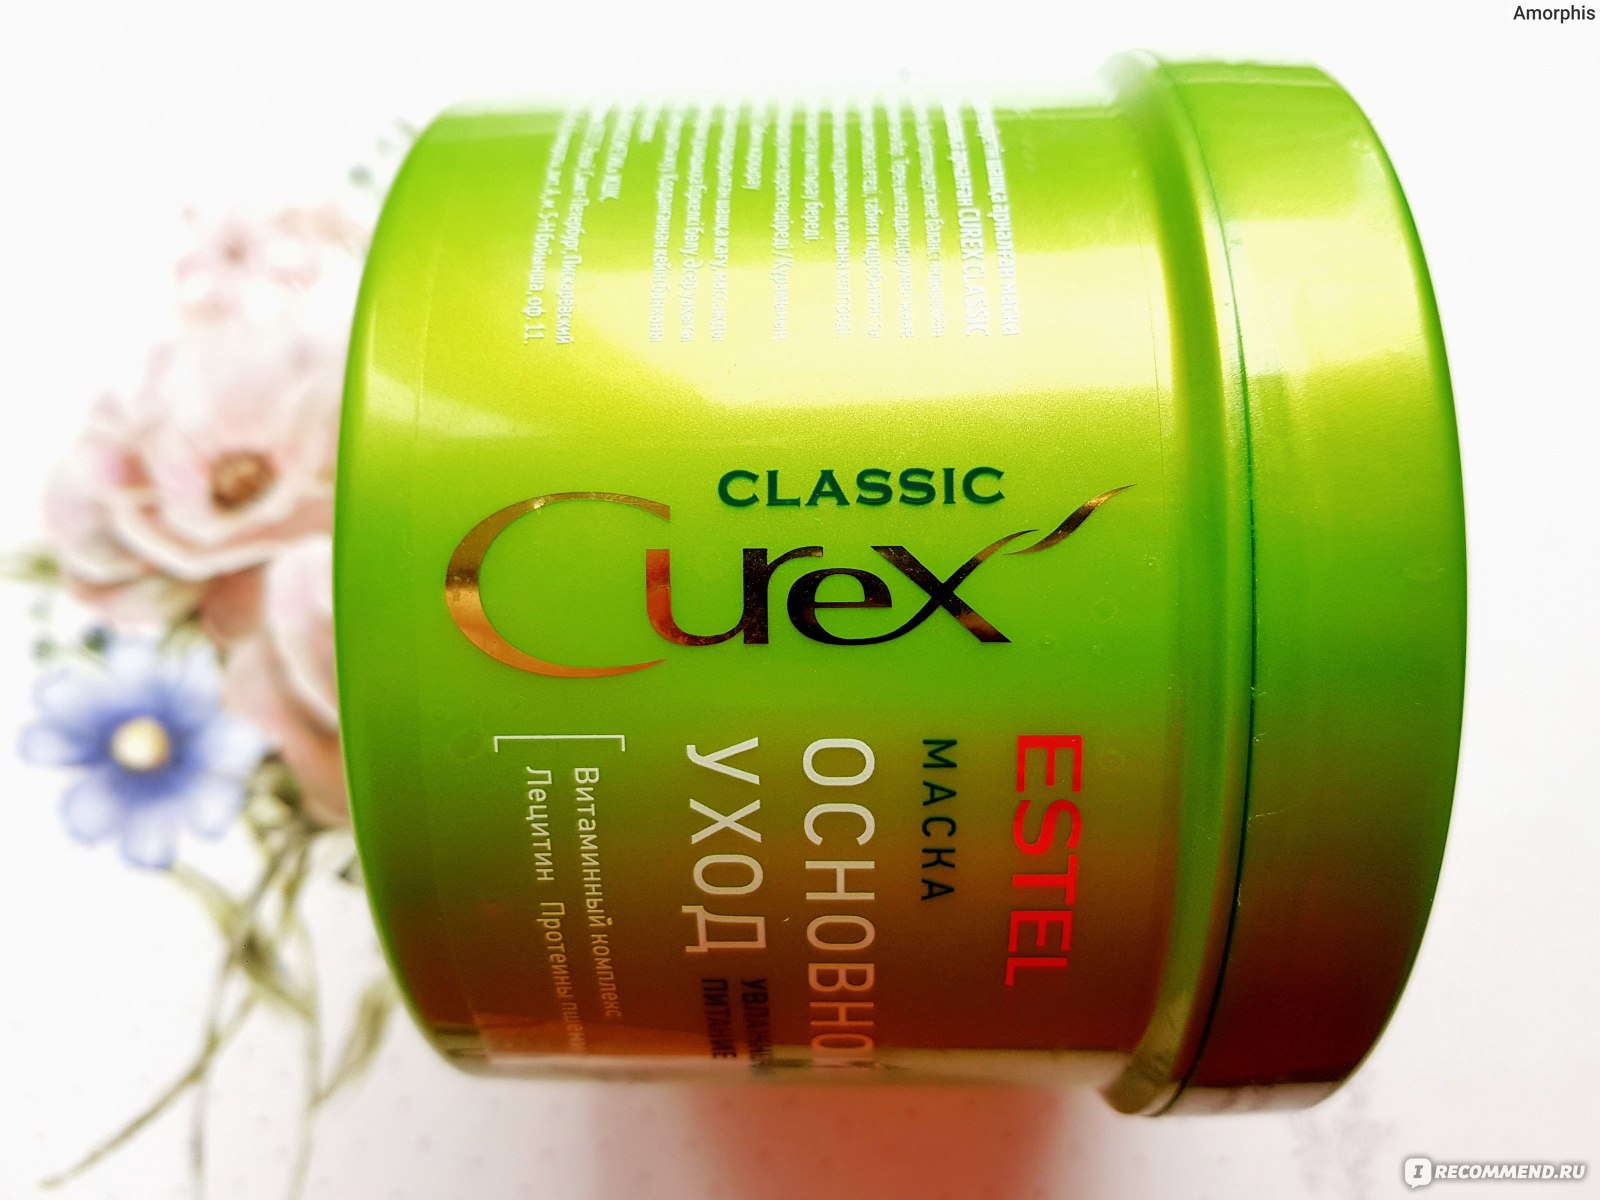 Маска для волос curex. Маска "основной уход" для всех типов волос Curex Classic (500 мл). Маска Эстель основной уход как использовать.